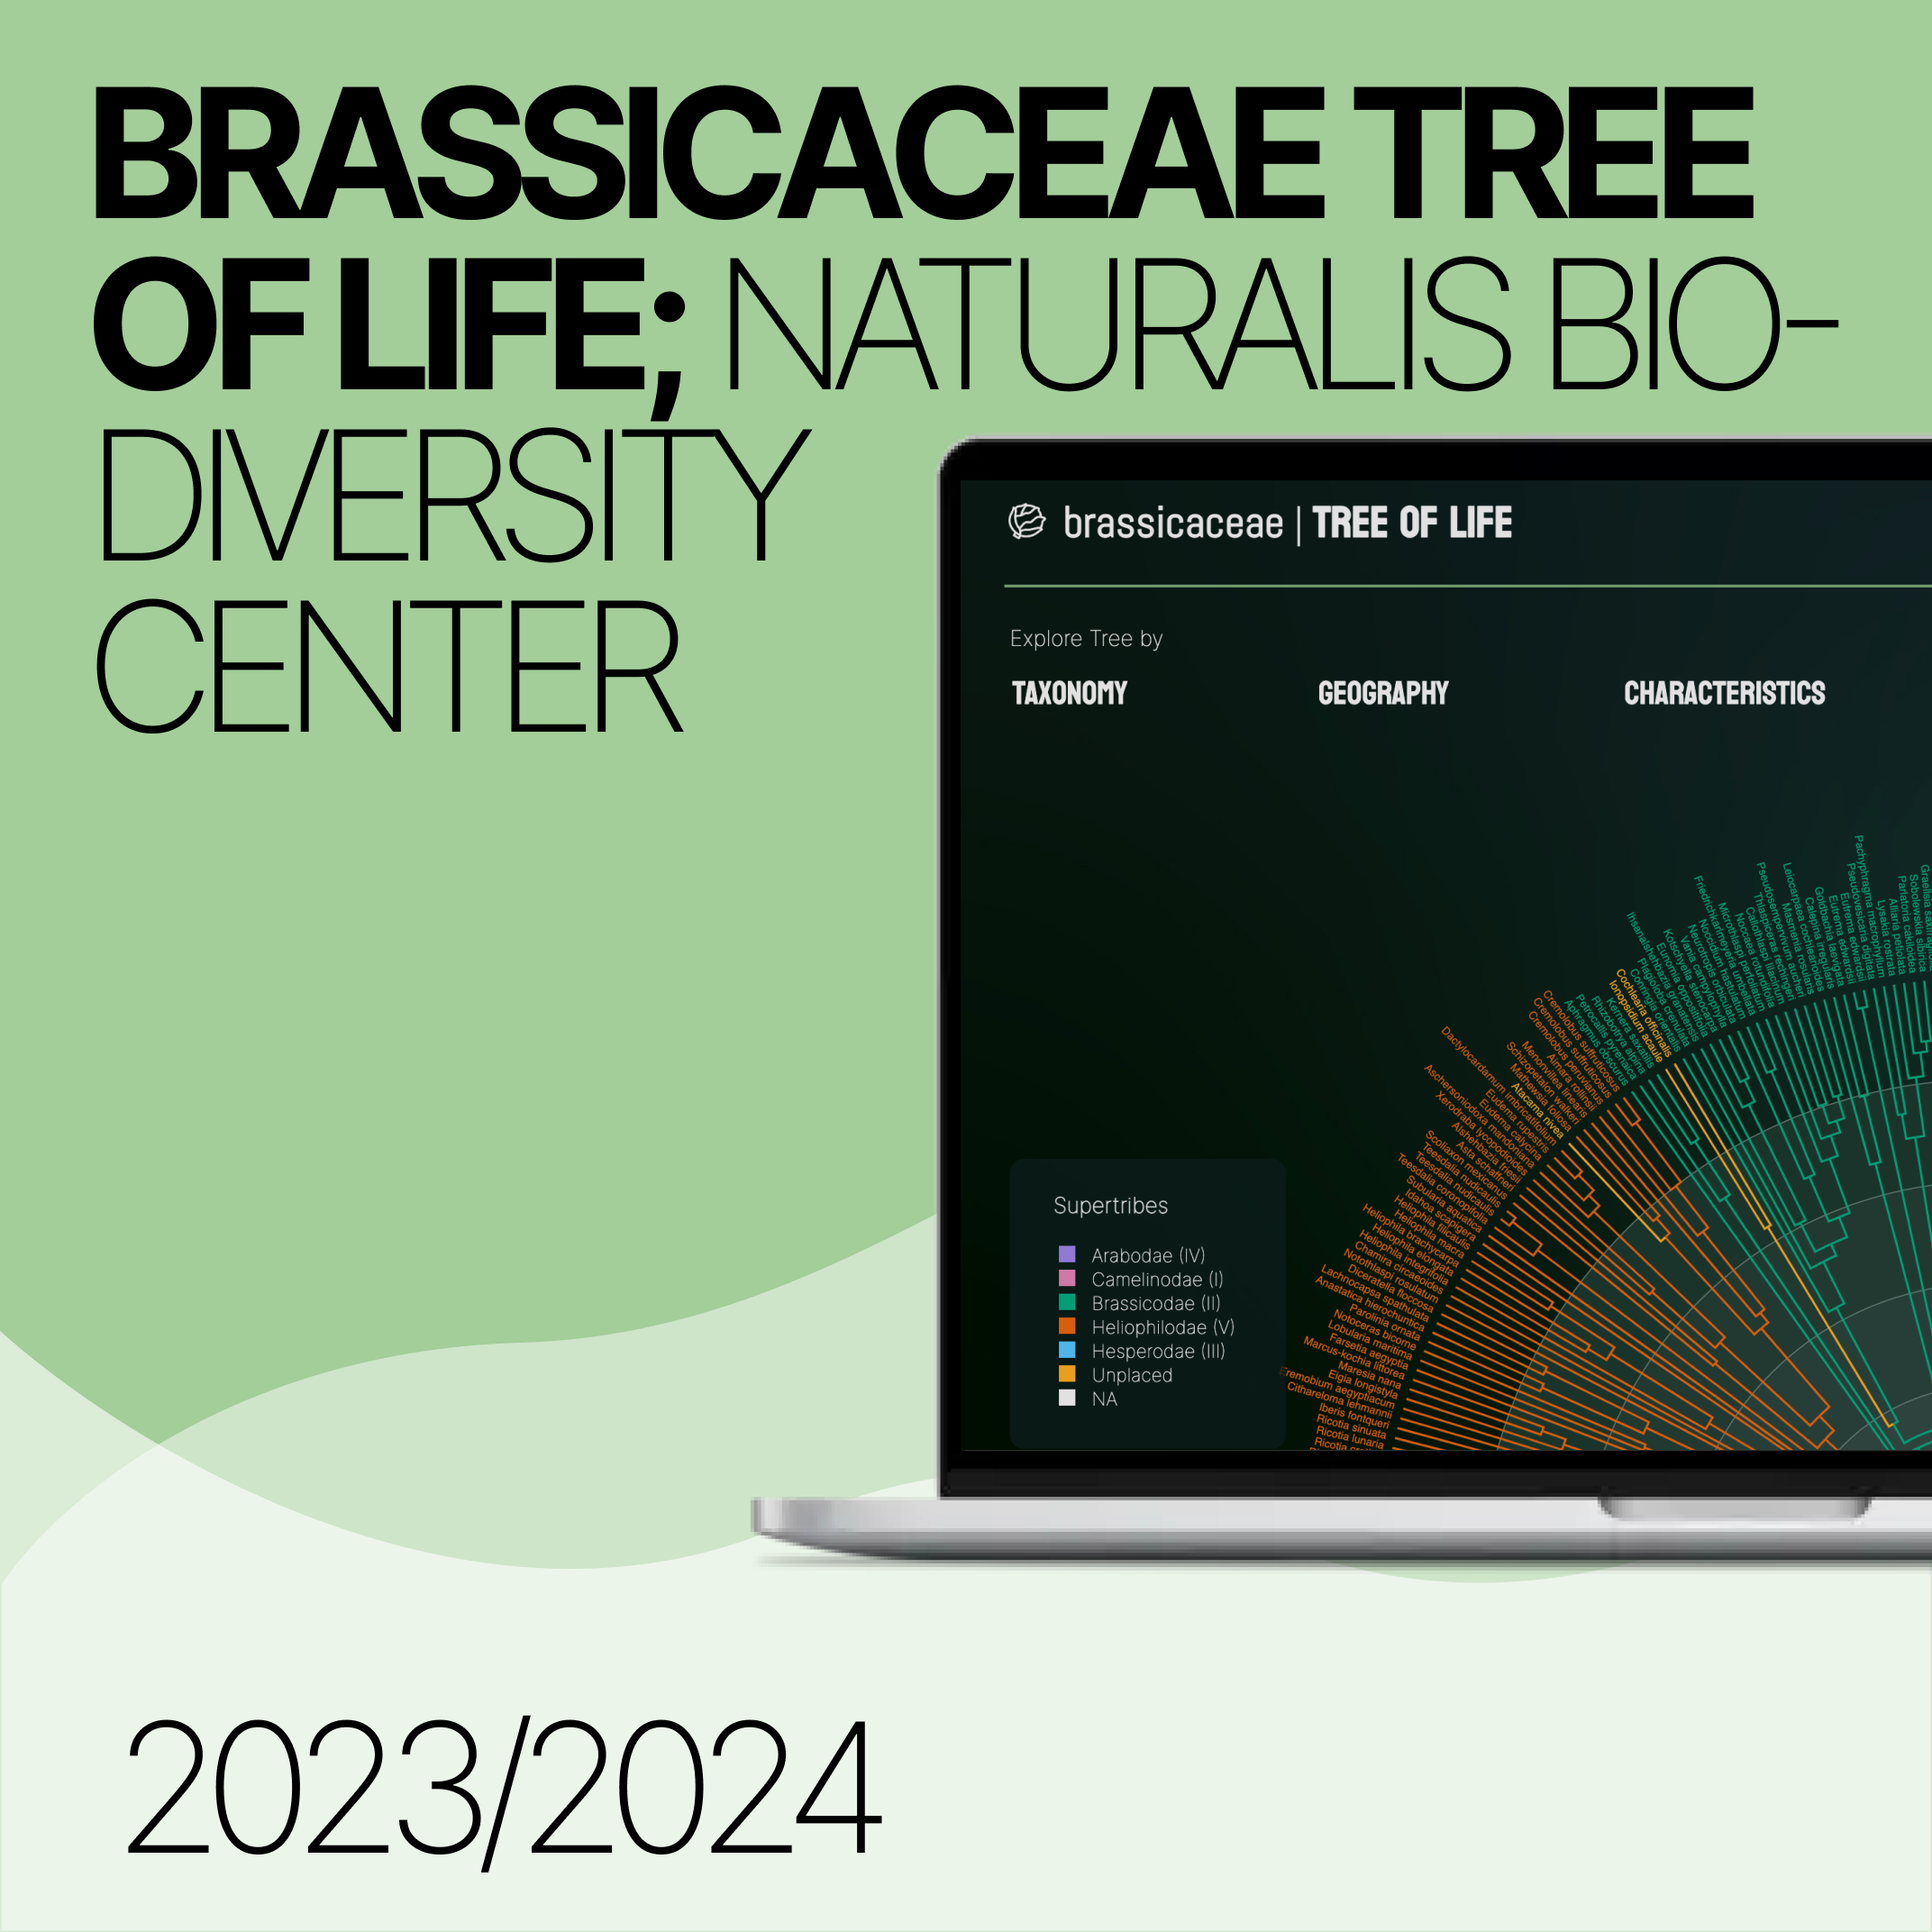 Brassicaceae Tree of Life: Naturalis Biodiversity Center